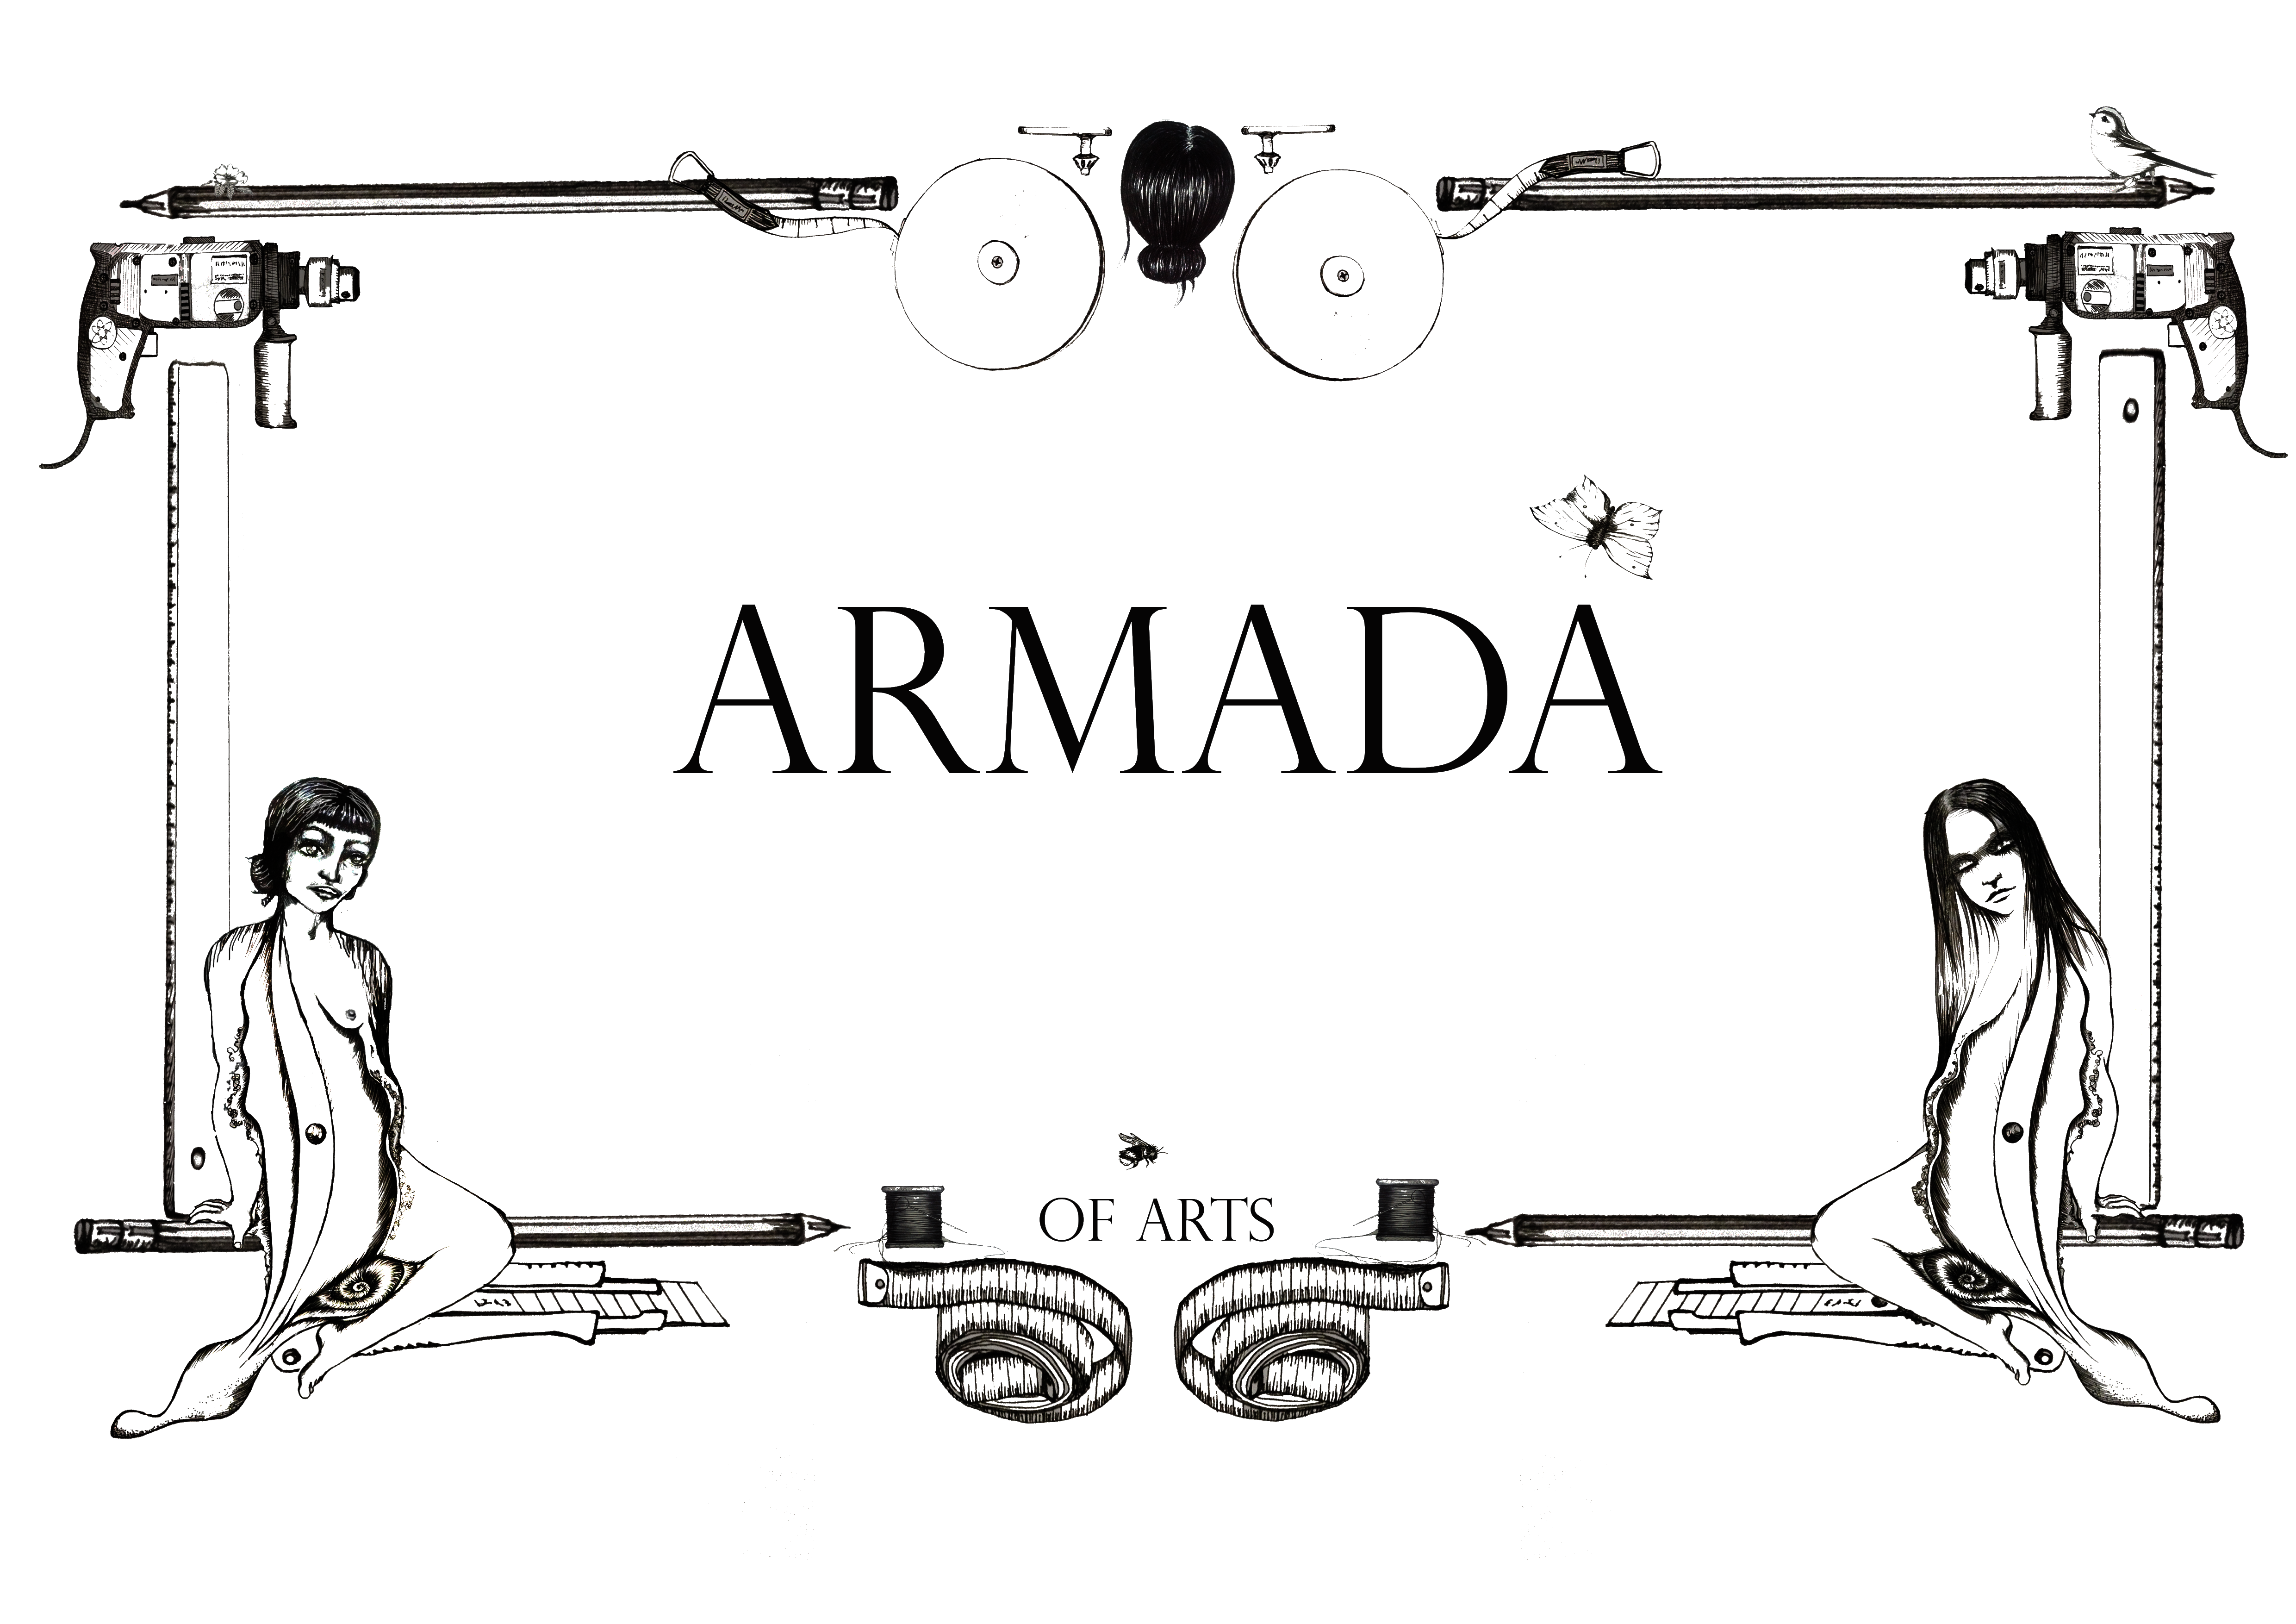 Armada of Arts Schriftzug in einem Rahmen aus Stiften, Bohrmaschinen, Linealen, Maßbändern und anderem Werkzeug. In den Ecken sitzen zwei Frauen.